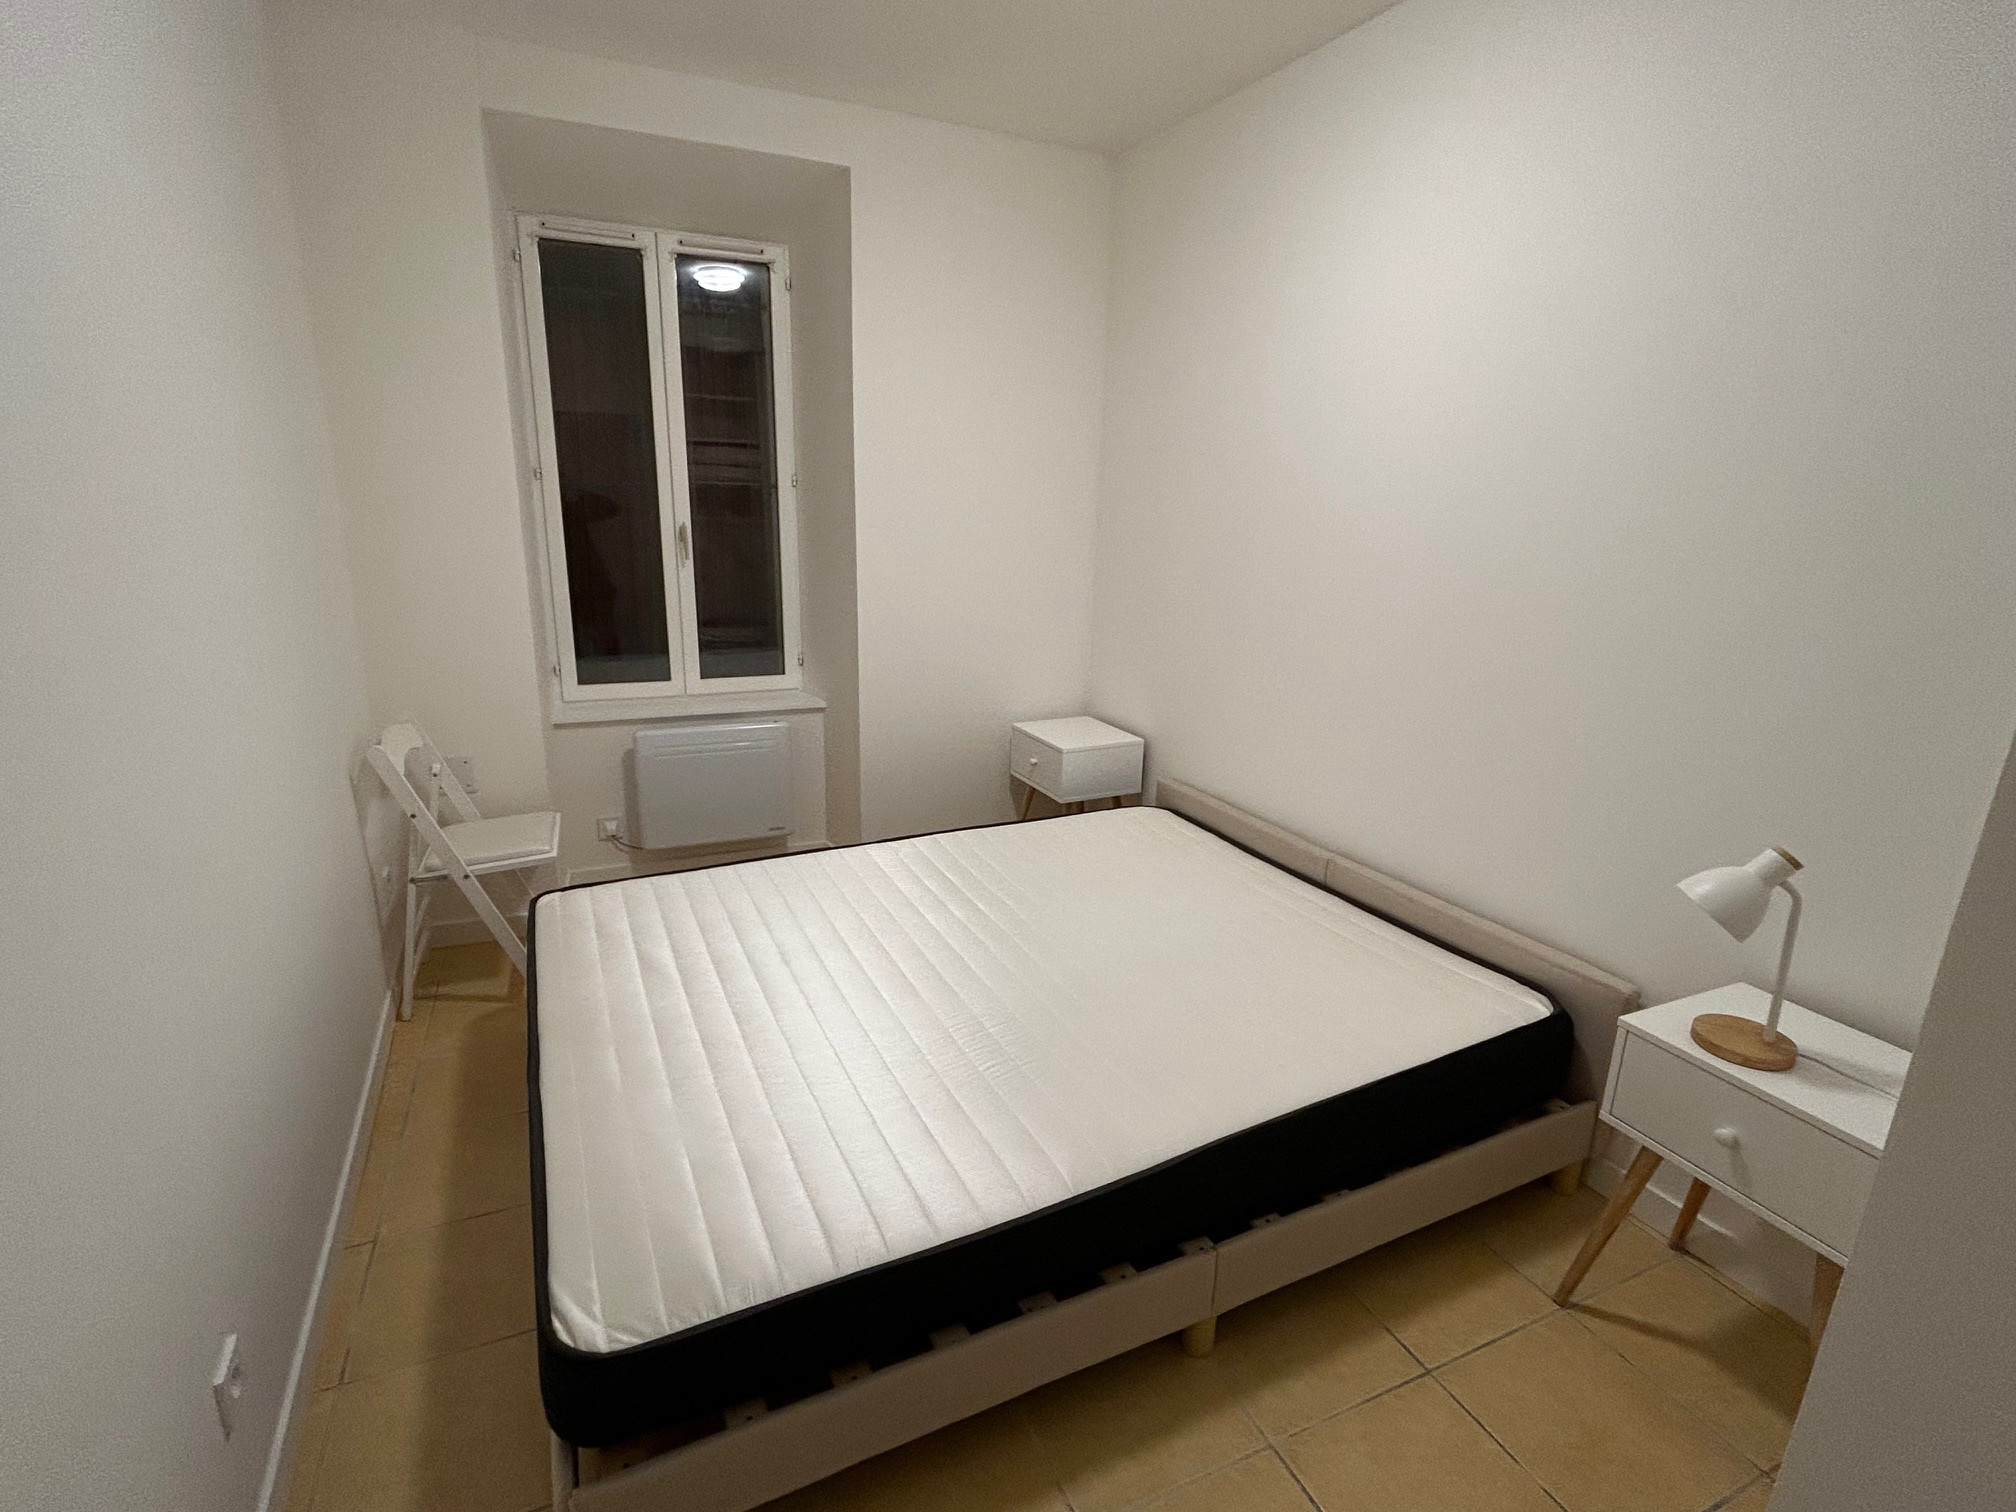 Appartement Appartement Lézignan-Corbières 760€ Grimois Immobilier